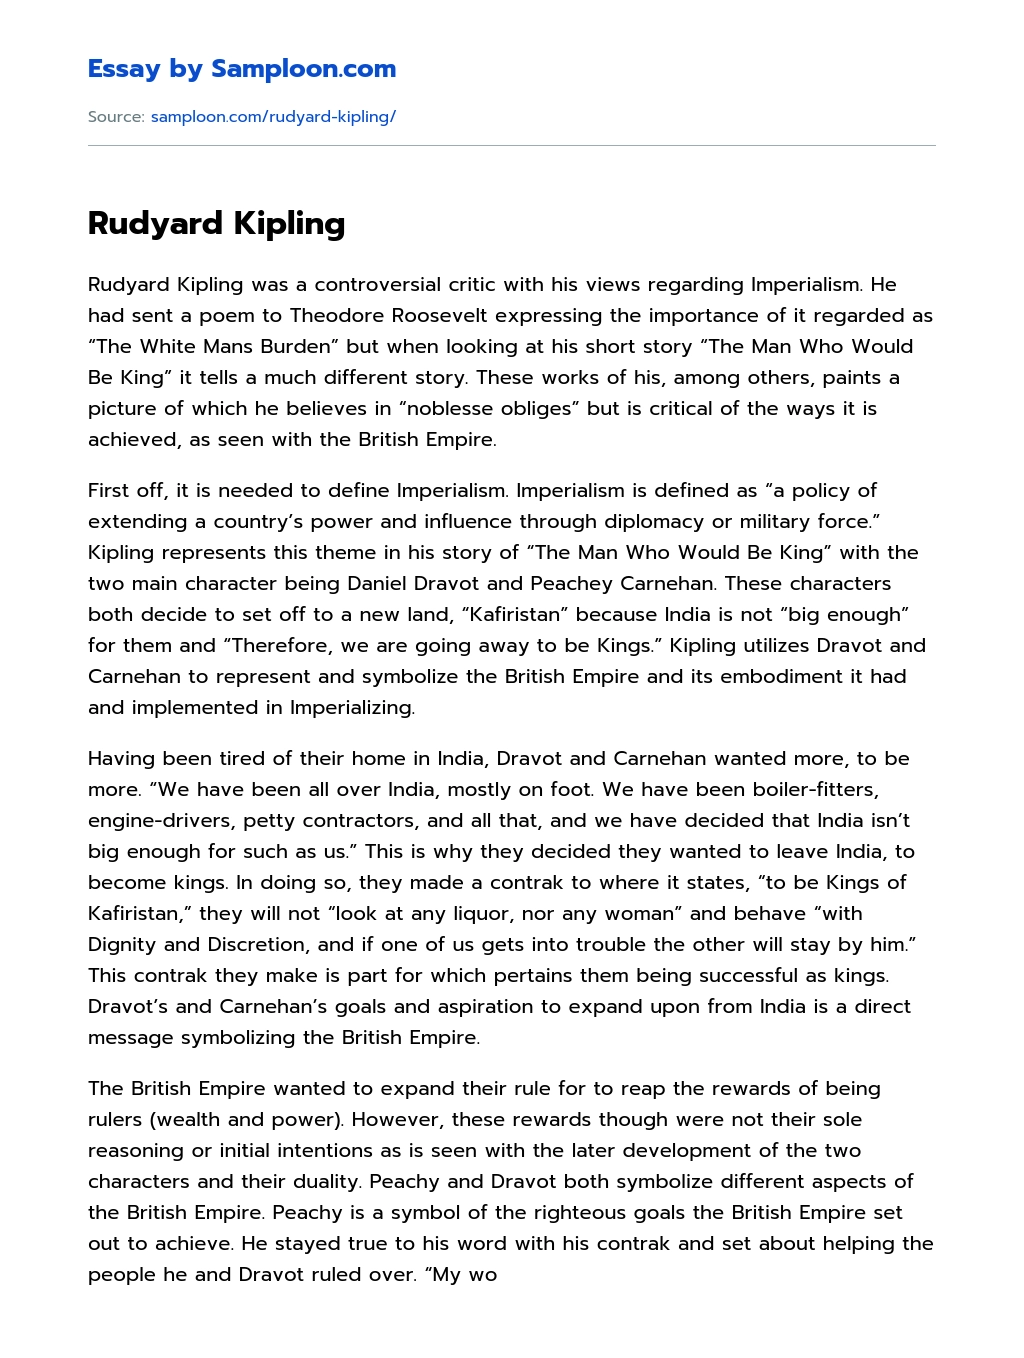 Rudyard Kipling essay